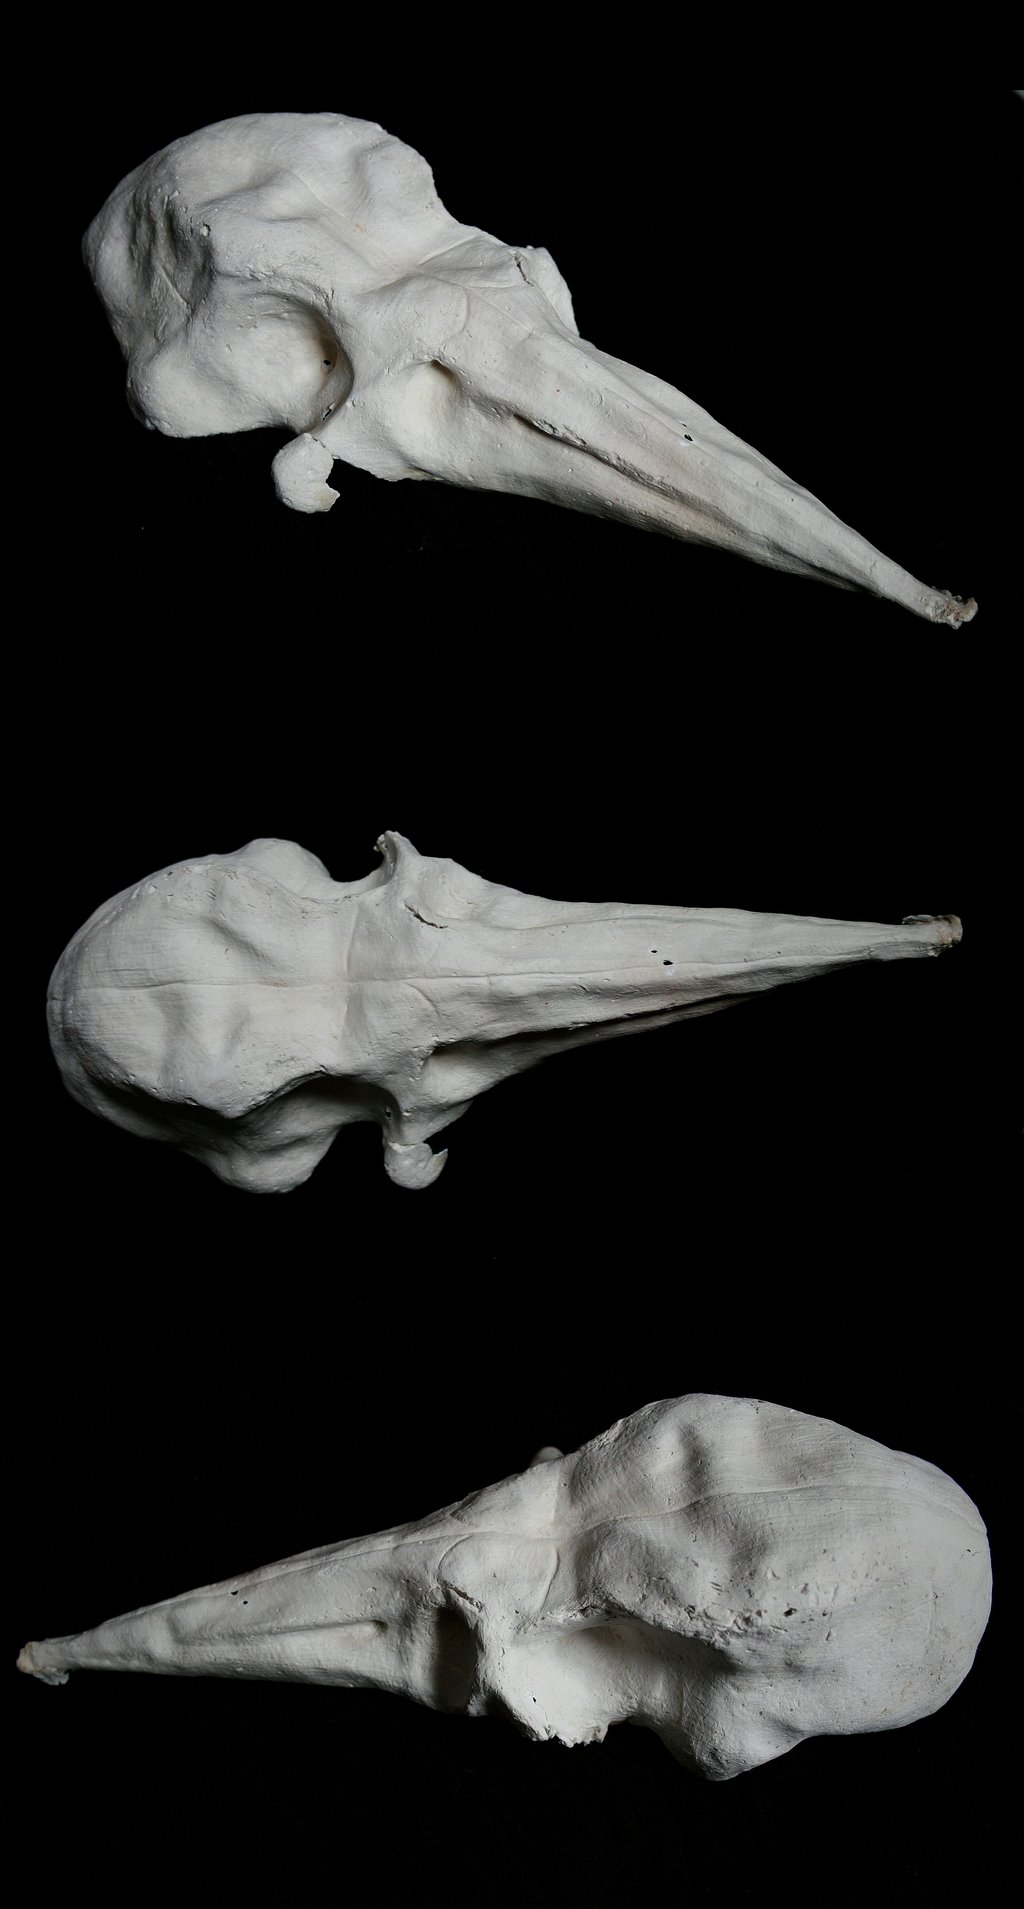 Bird skull photo